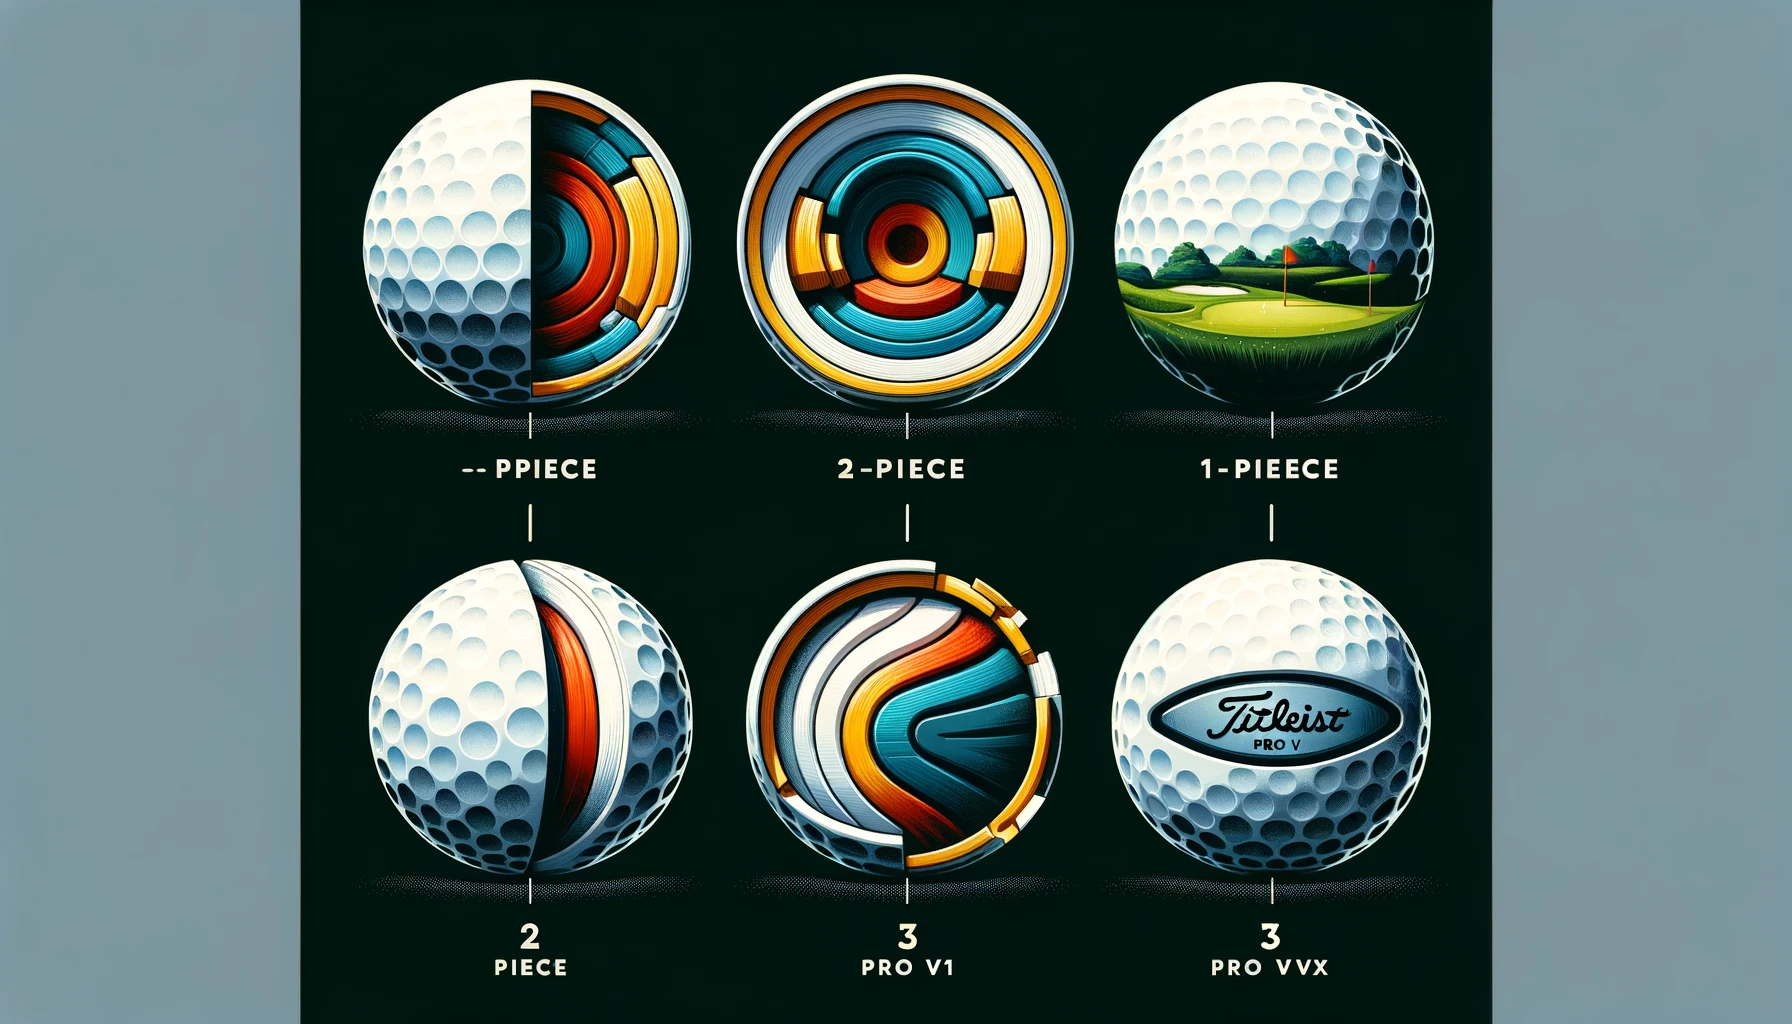 골프 볼 선택 가이드: 다양한 유형과 특성을 고려하여 최적의 골프 볼 찾기 - 골프 볼의 다양한 유형&#44; 2 피스 골프 볼&#44; 3 피스 골프 볼&#44; 타이틀리스트 프로